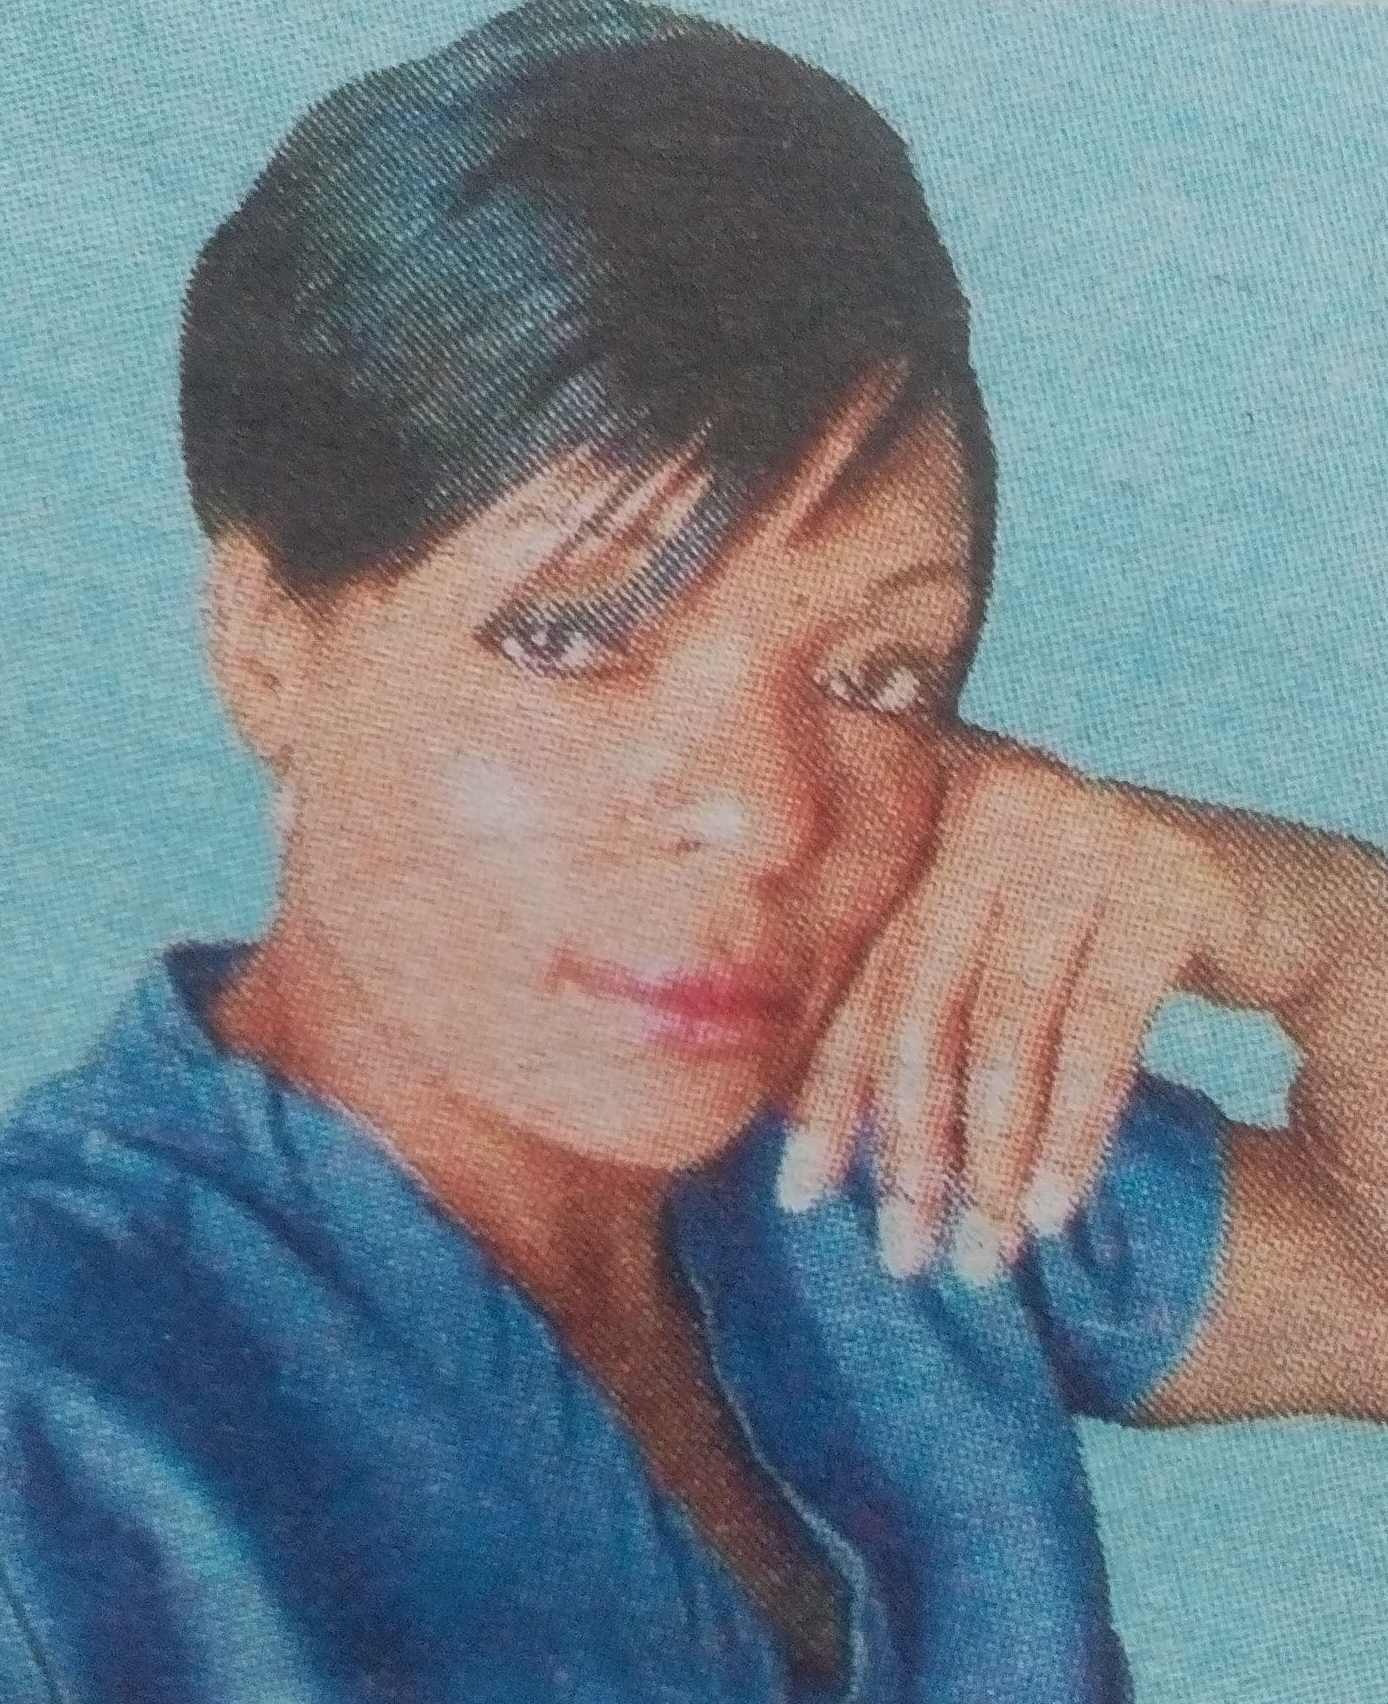 Obituary Image of Salome Moraa Ombati